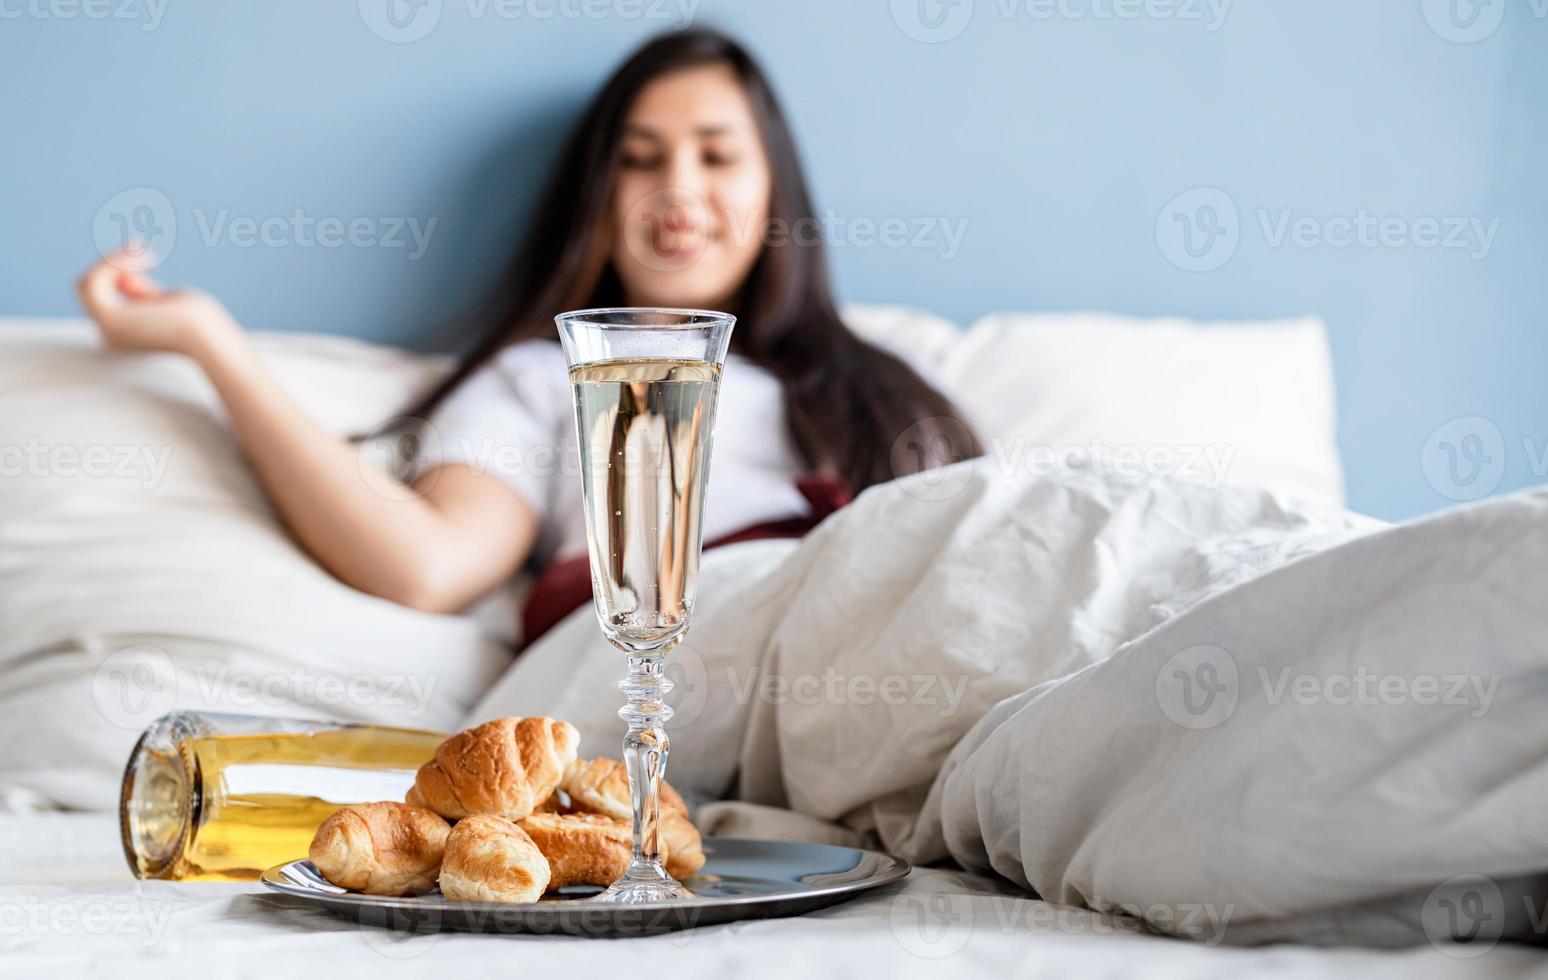 jovem morena sentada acordada na cama com balões em forma de coração vermelho e decorações bebendo champanhe comendo croissants foto